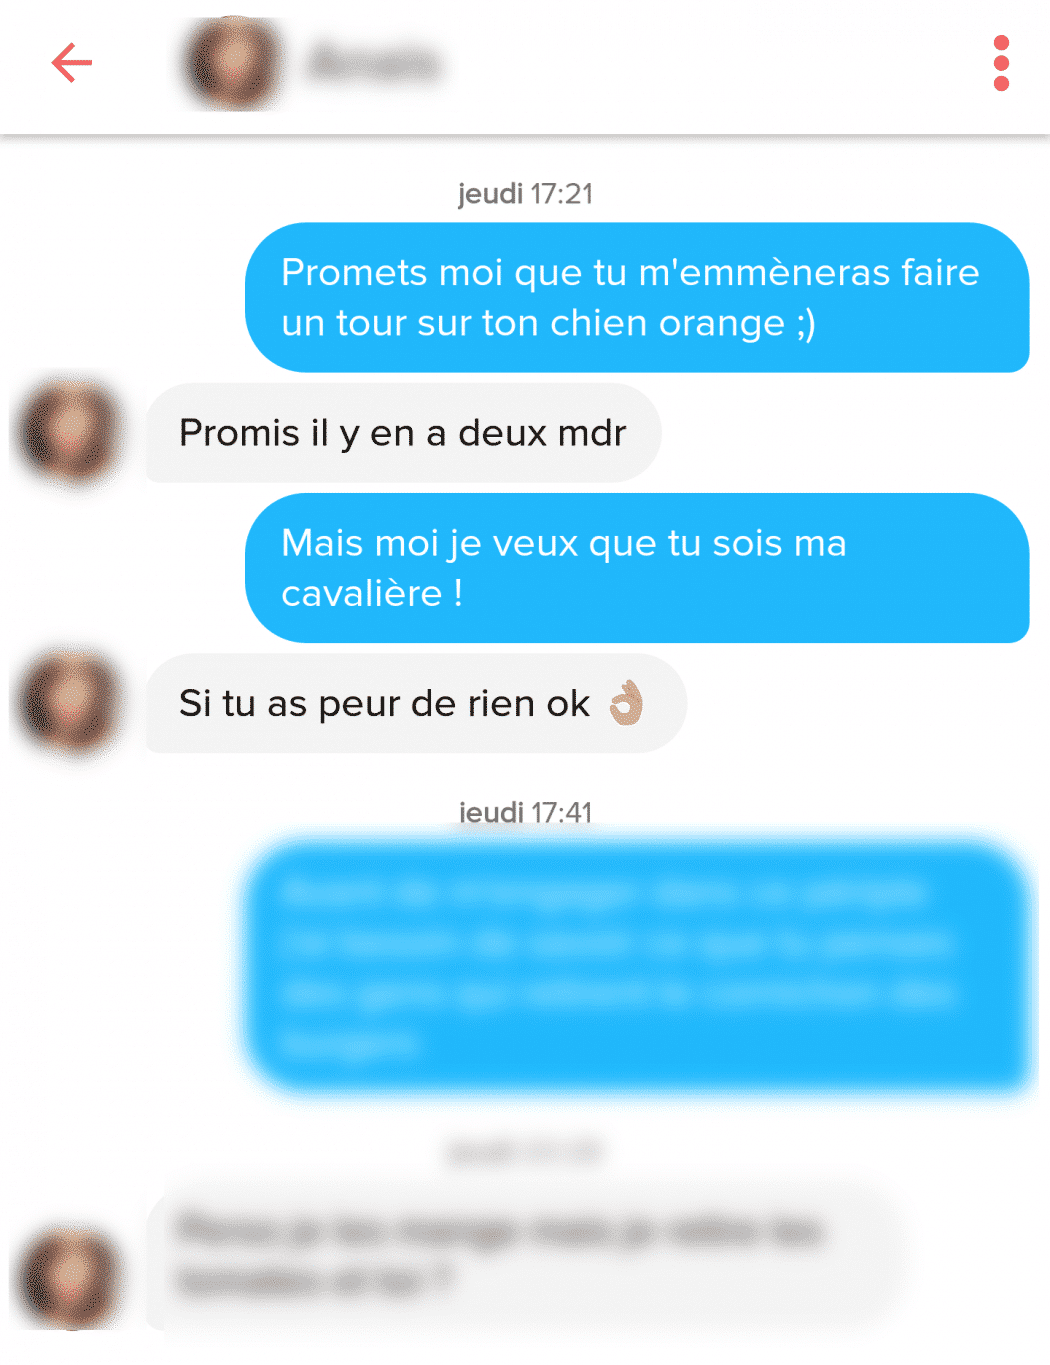 quel premier message envoyé sur un site de rencontre flirter traduction francais